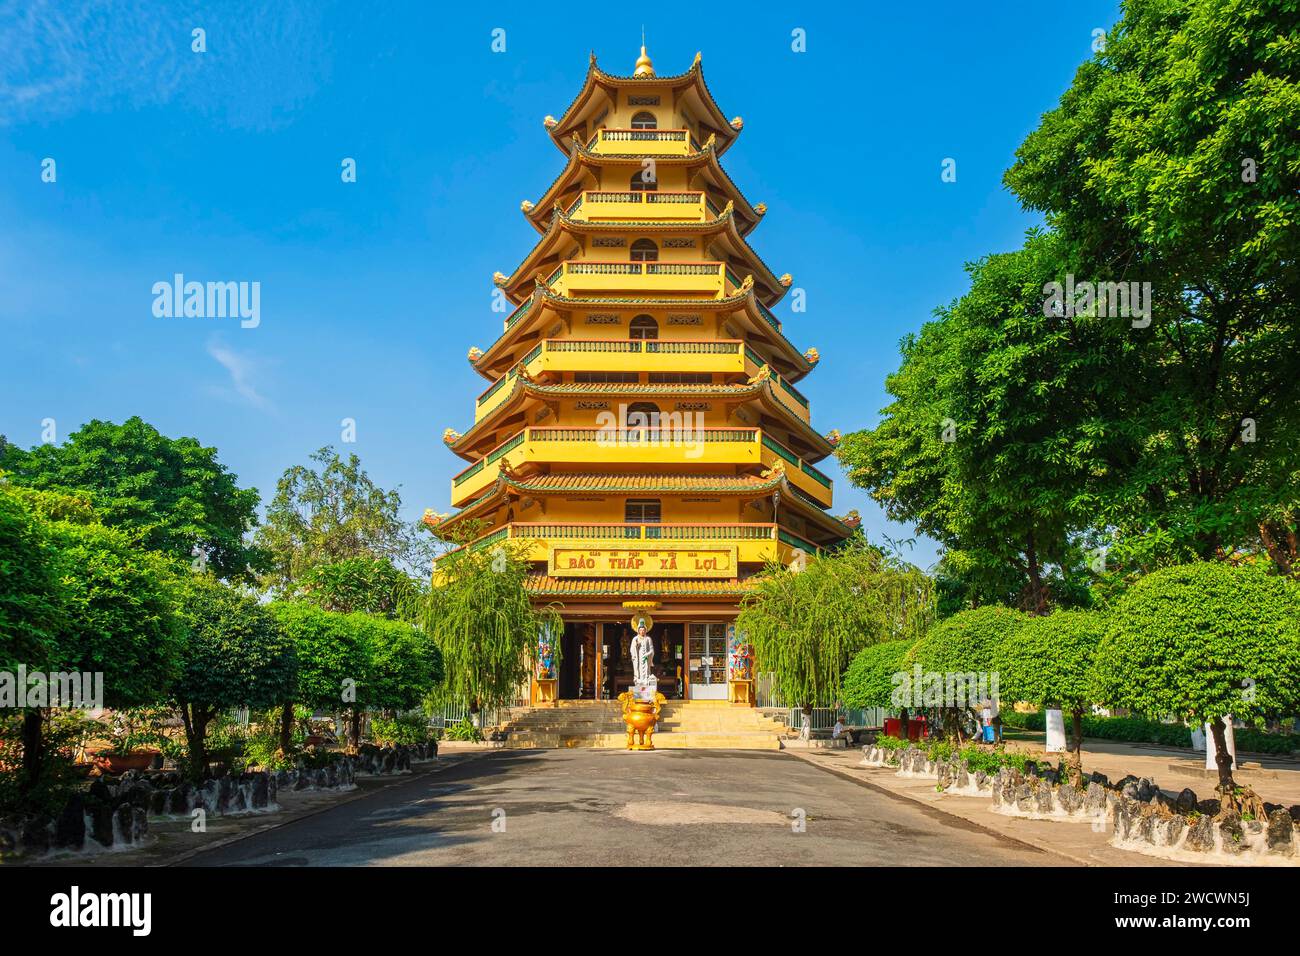 Vietnam, Ho Chi Minh City (Saigon), Tan Binh District, Giac Lam buddhistische Pagode aus dem Jahr 1744, einer der ältesten Tempel der Stadt Stockfoto